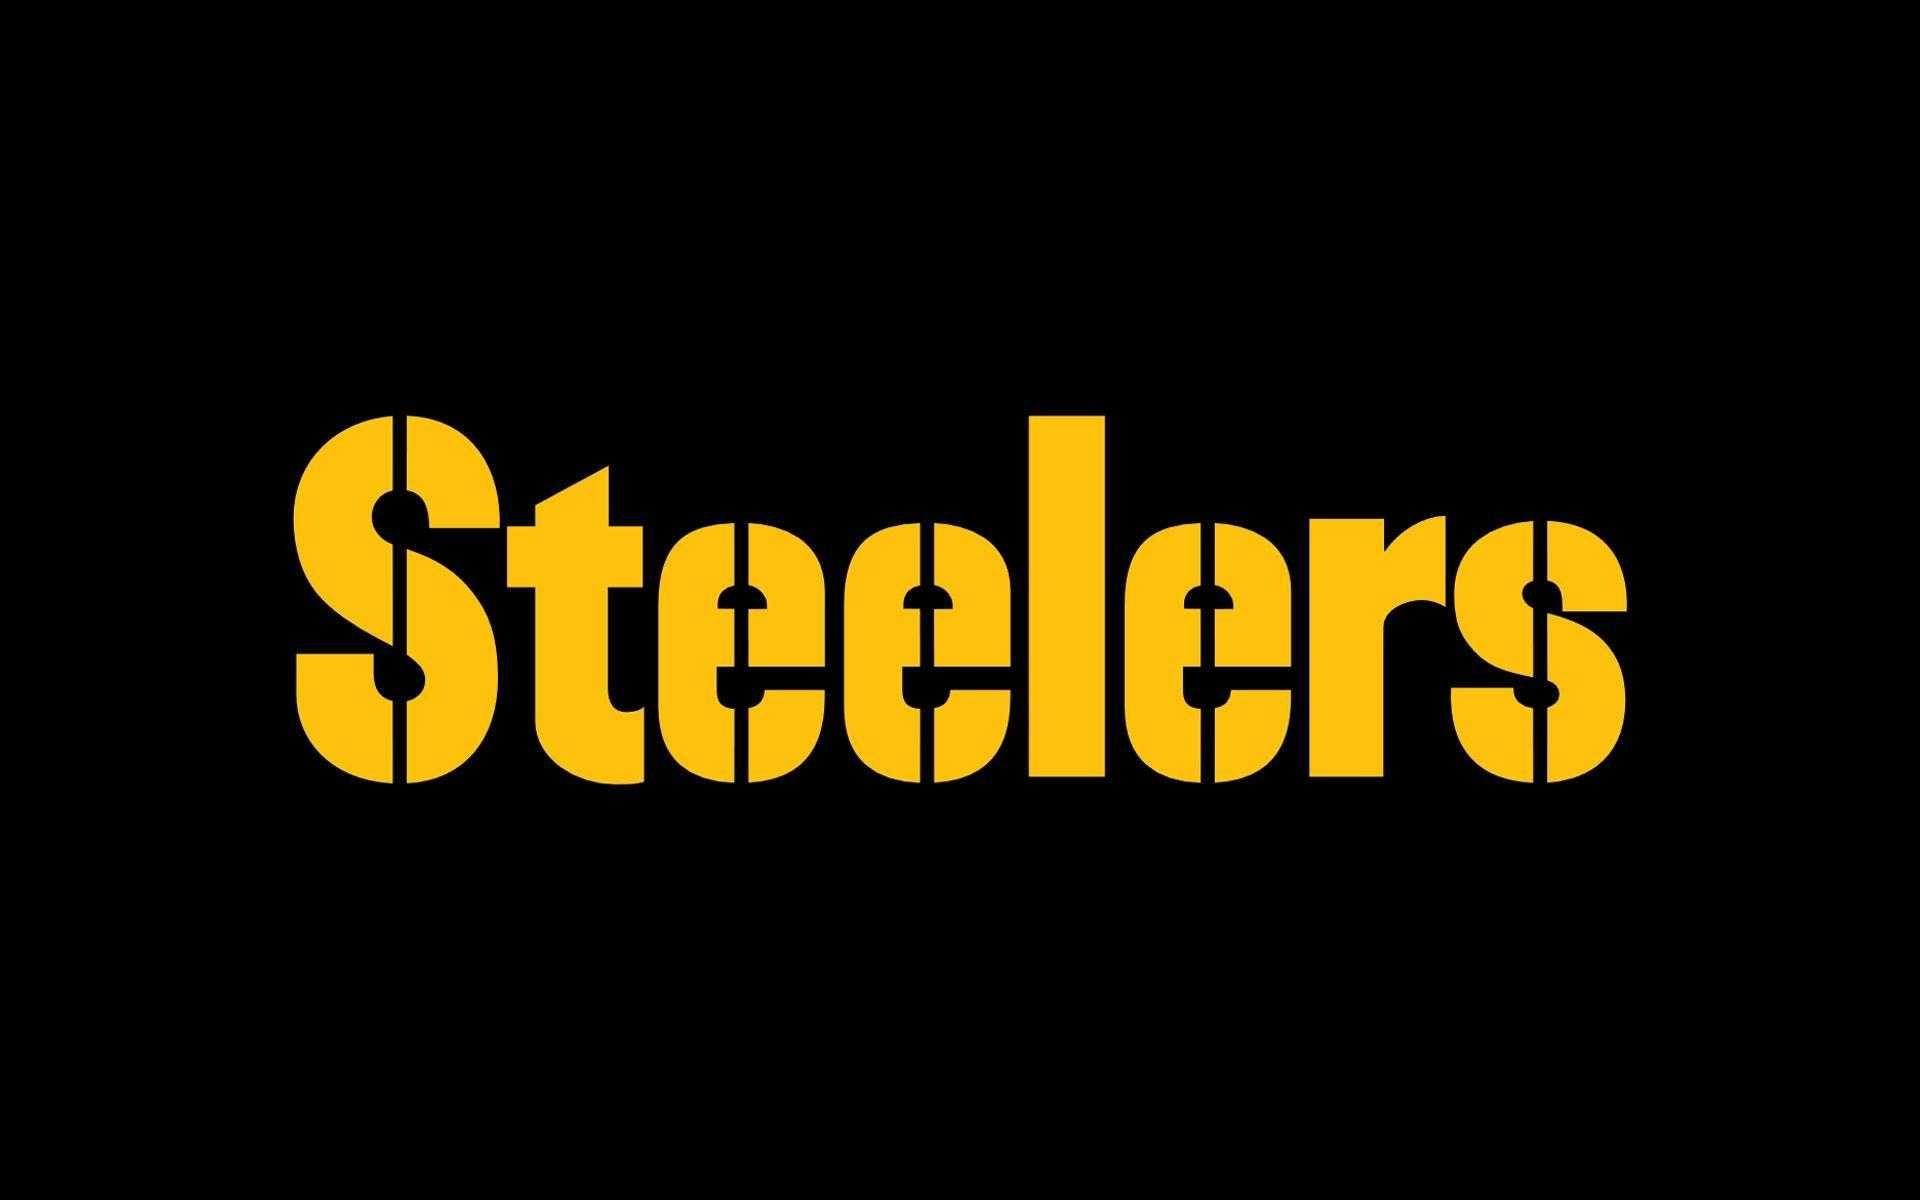 Pittsburgh Steelers NFL HD Steelers Wallpapers  HD Wallpapers  ID 48699